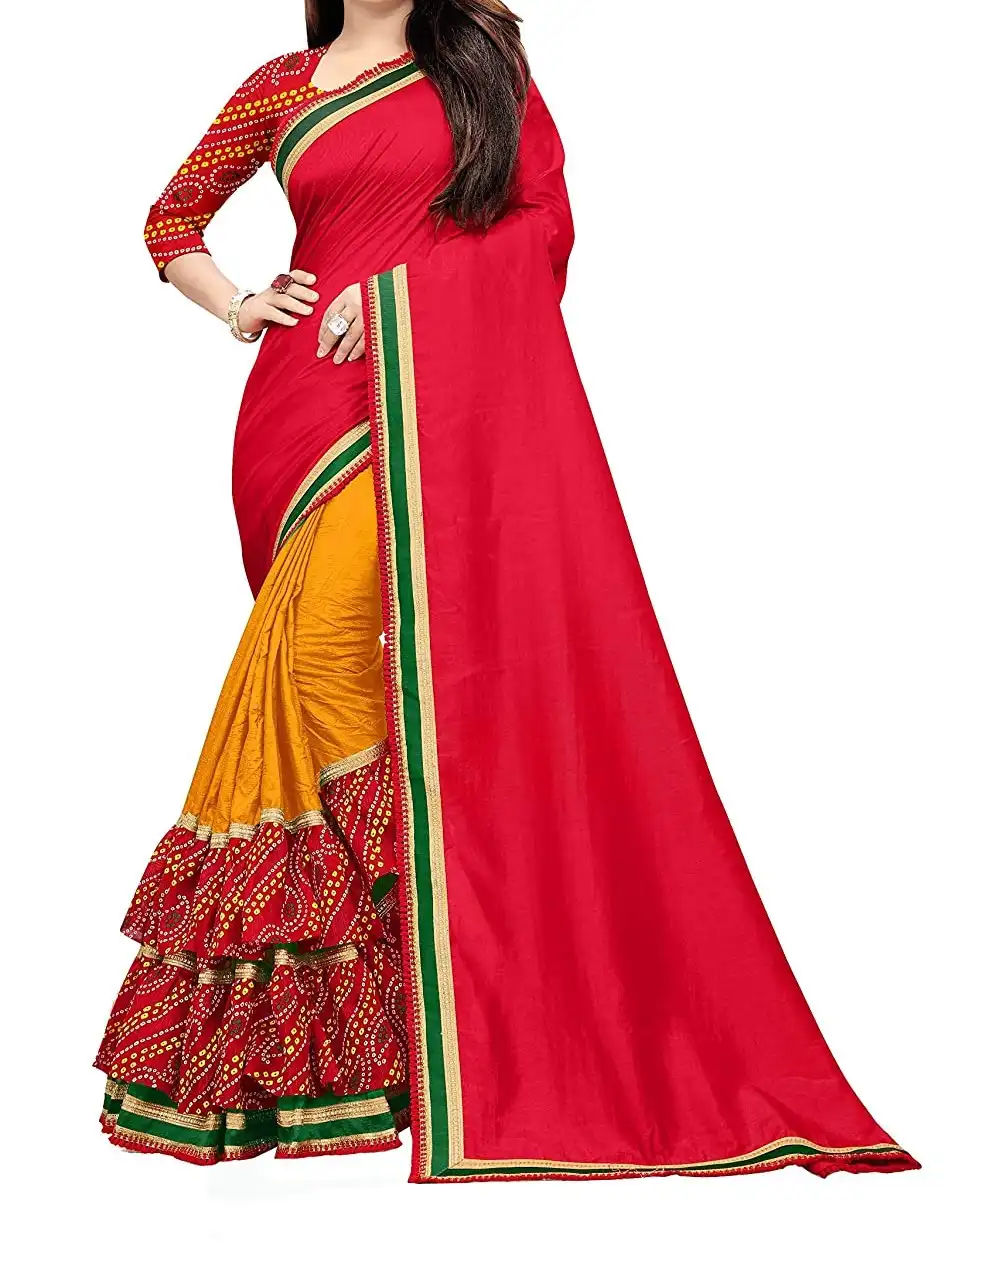 Традиционное новейшее индийское платье ручной работы, этническое сари с оборками и блузкой, богатый материал, высококачественная ткань